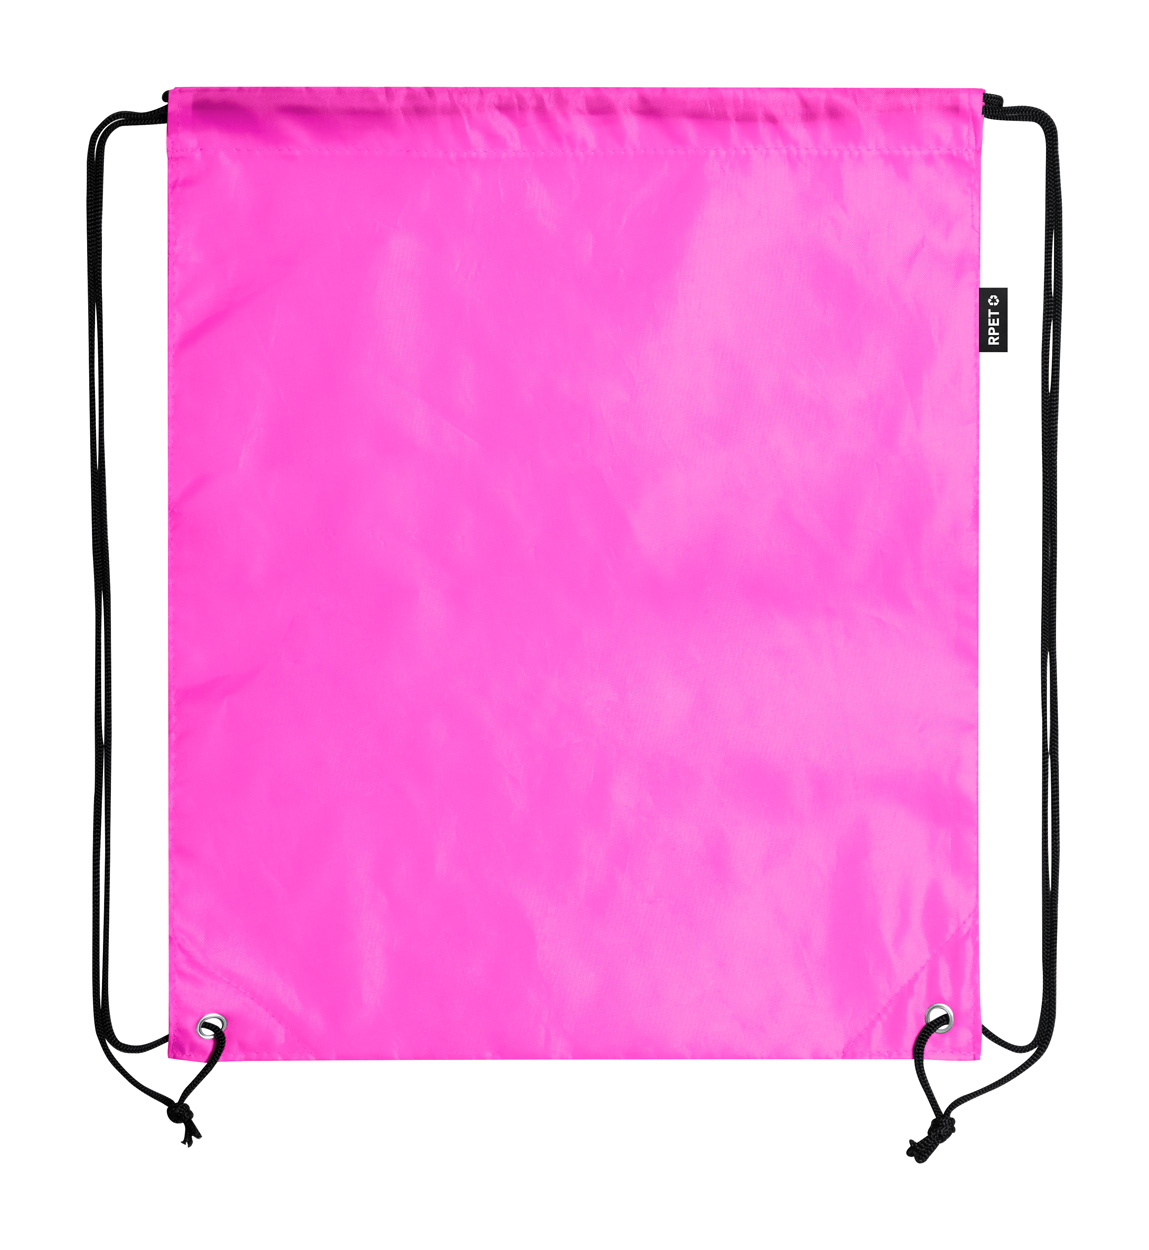 Lambur RPET drawstring bag - pink